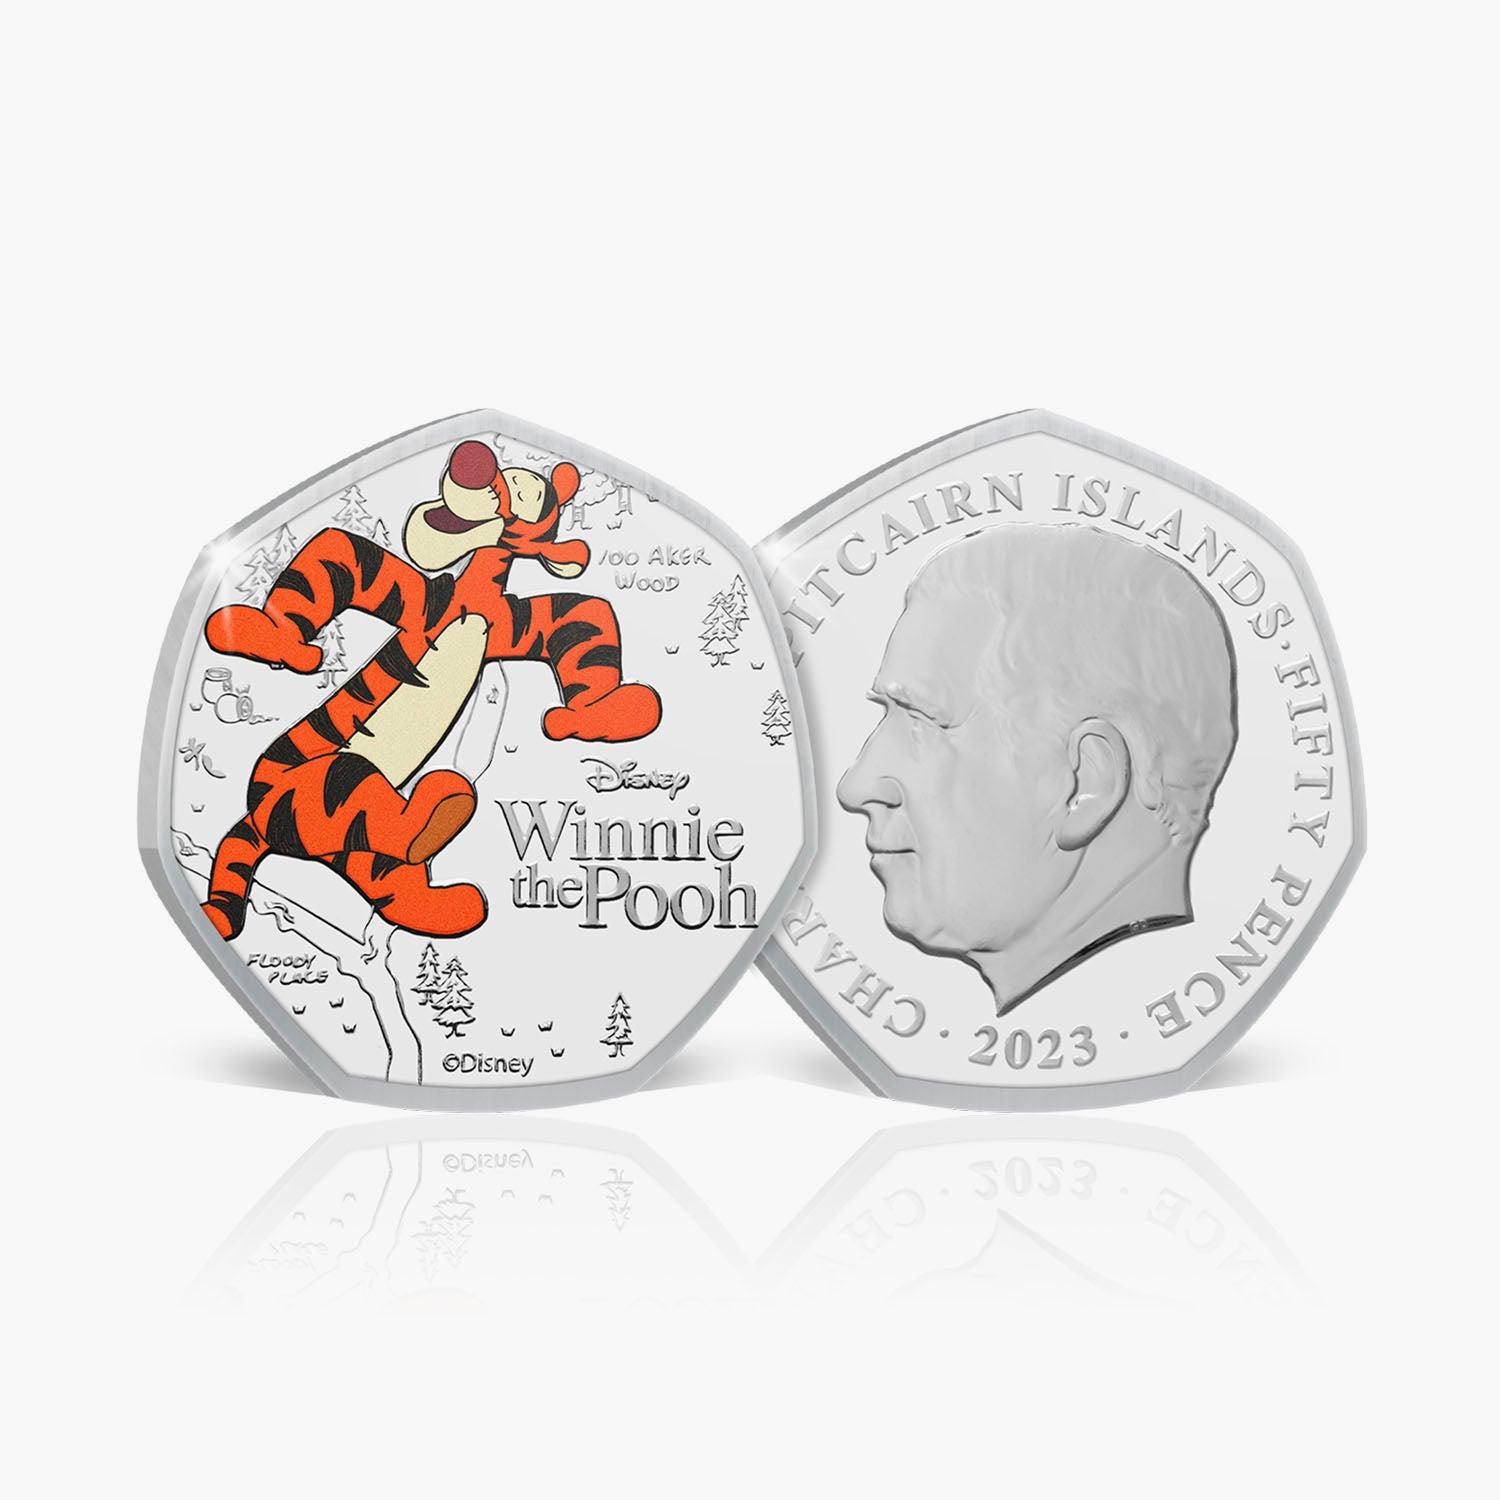 Winnie the Pooh Tigger 2023 50p BU Colour Coin